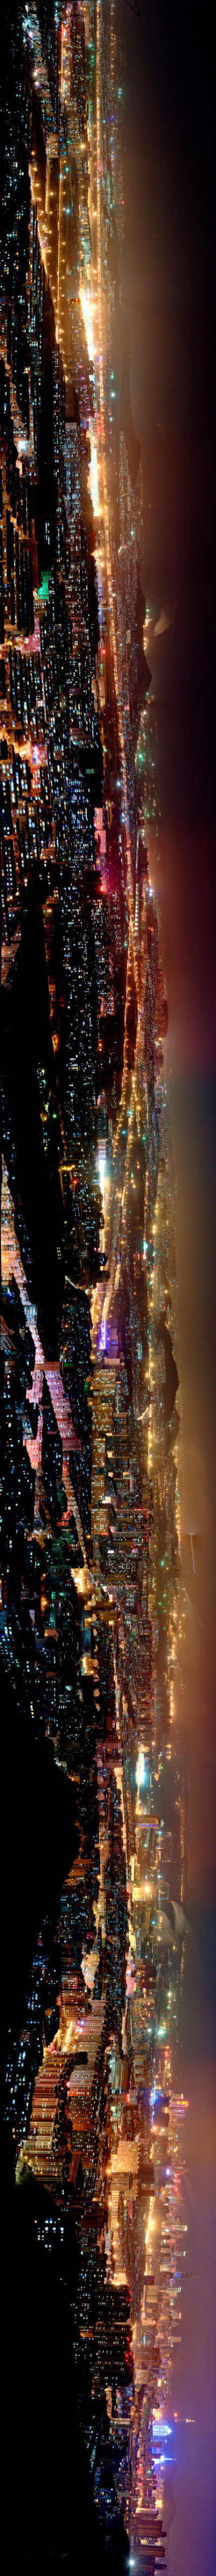 【大连 夜景拼图】不一样的美与震撼。丨 Photo by 热风DL